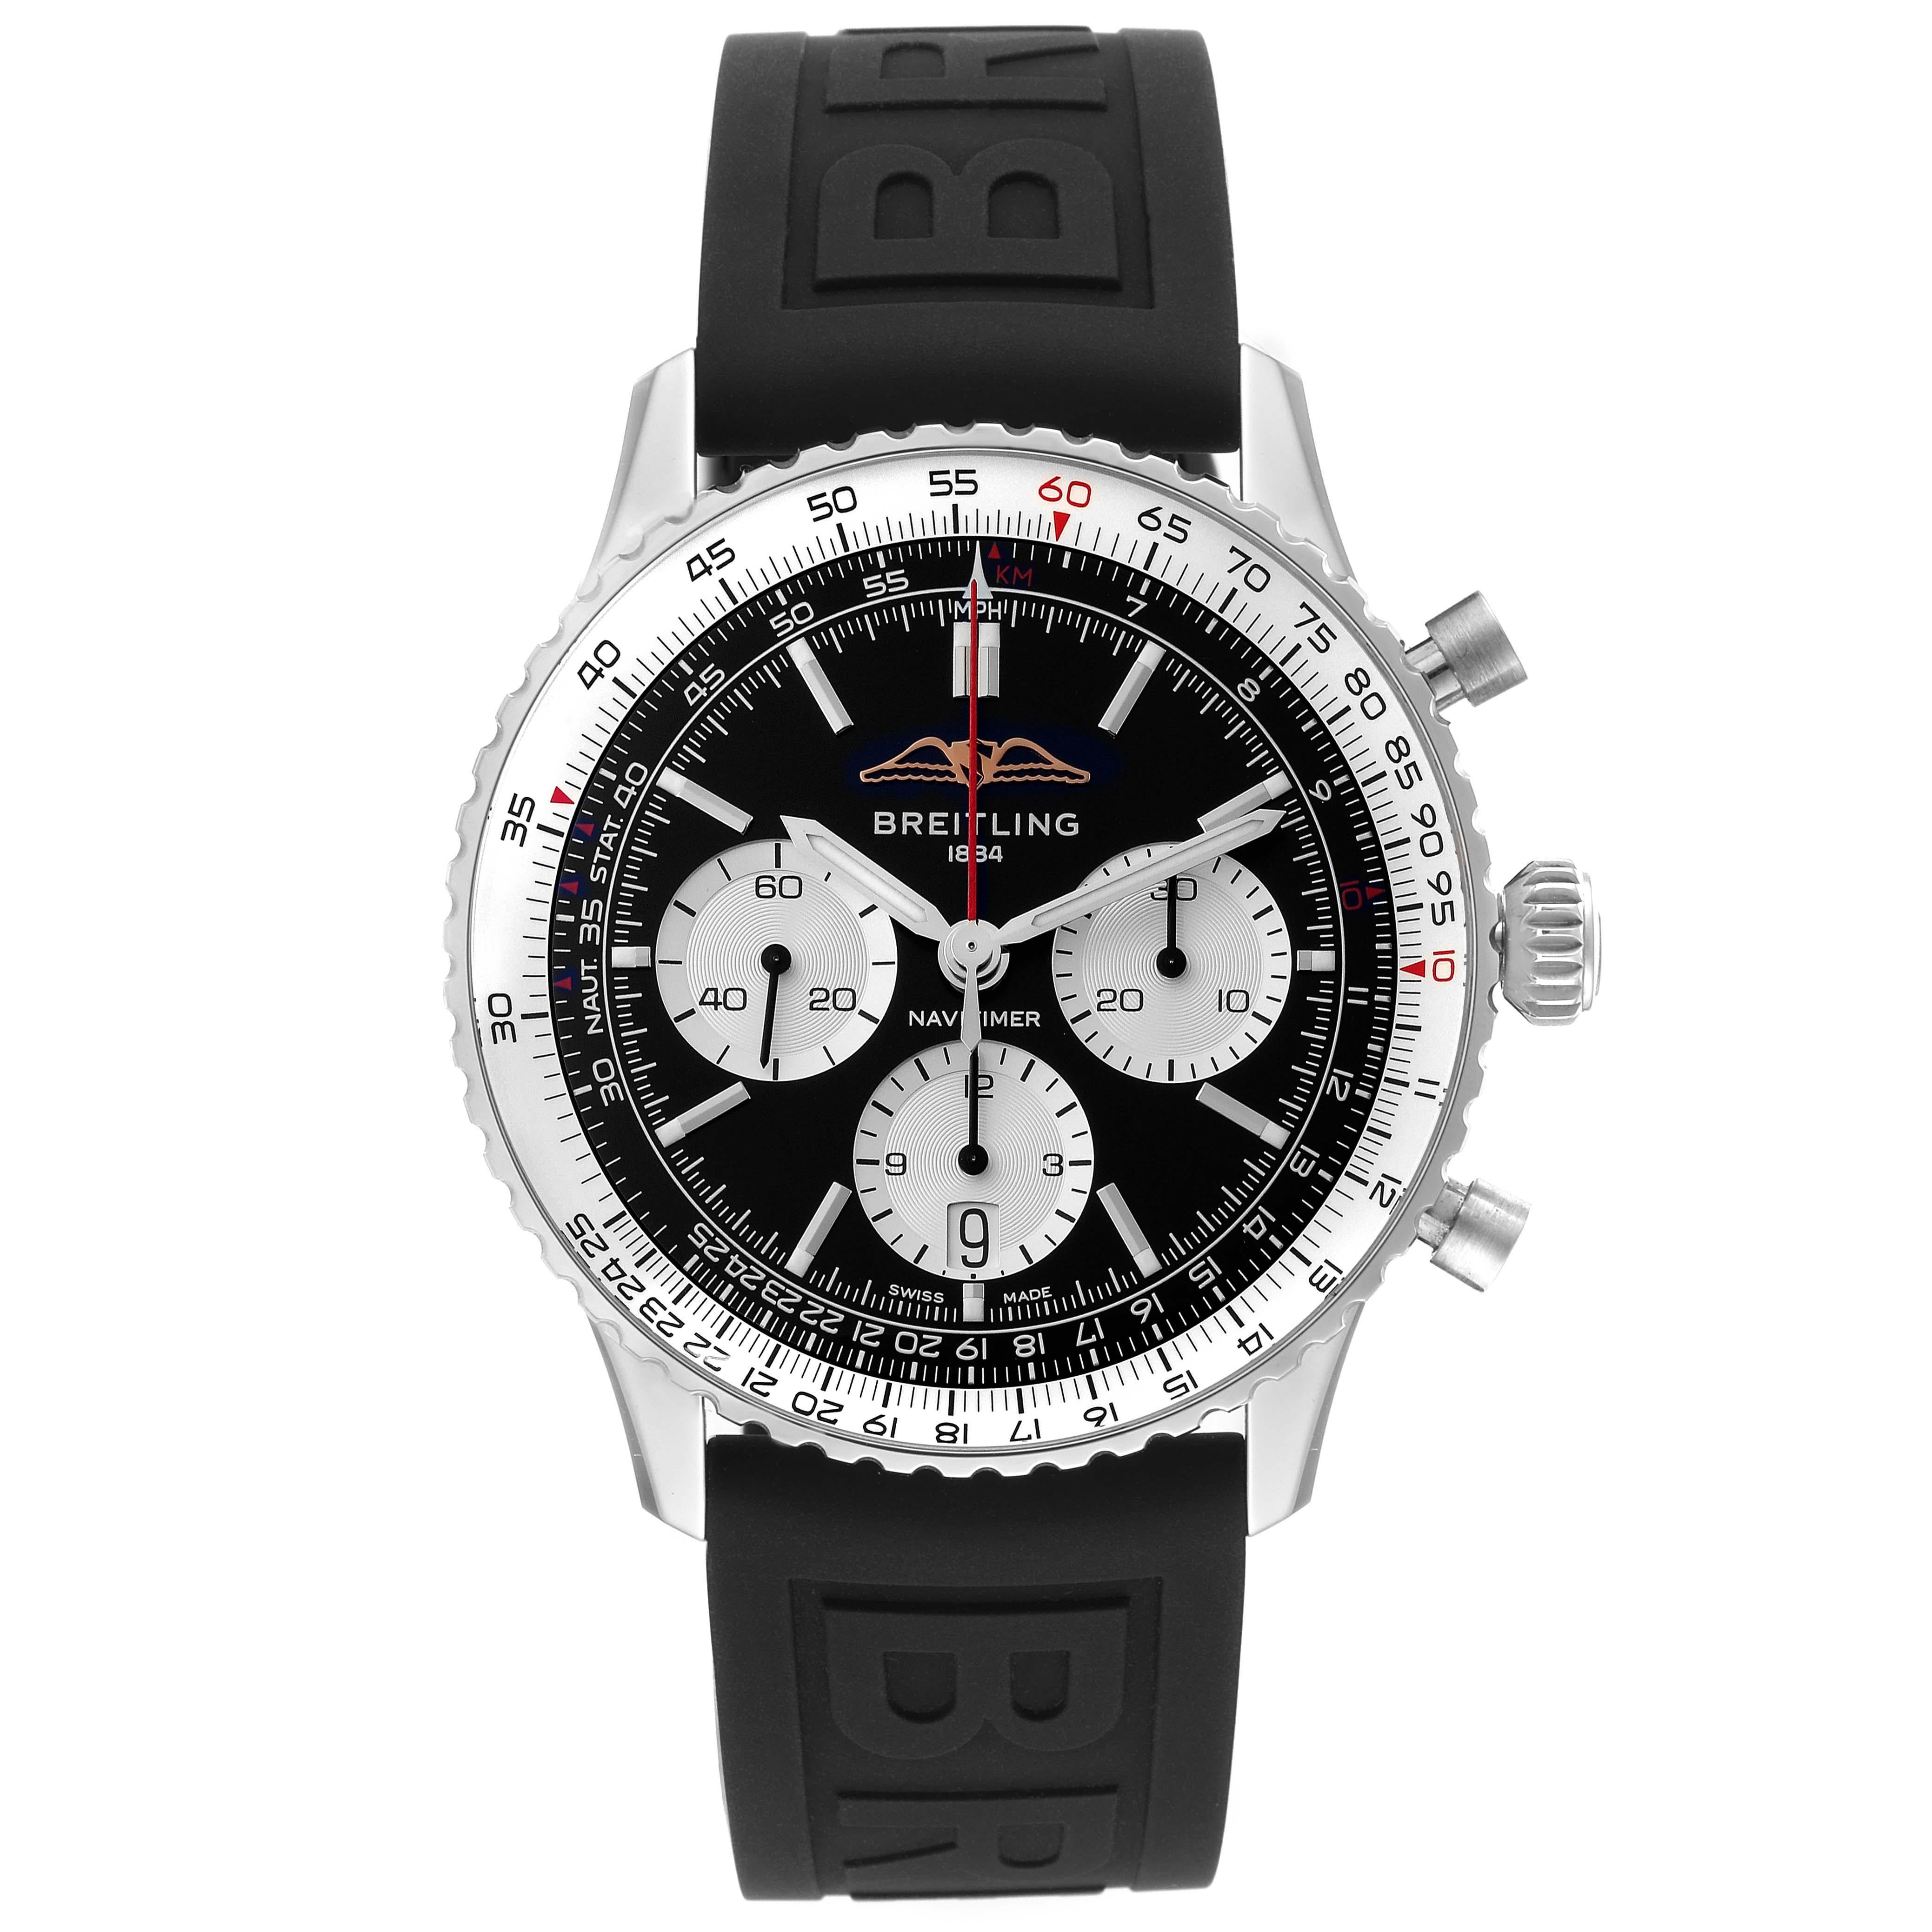 Breitling Navitimer B01 Black Dial Steel Mens Watch AB0138 Box Card. Mouvement automatique à remontage automatique, officiellement certifié chronomètre. Fonction chronographe. Boîtier en acier inoxydable de 43 mm de diamètre. Épaisseur du boîtier